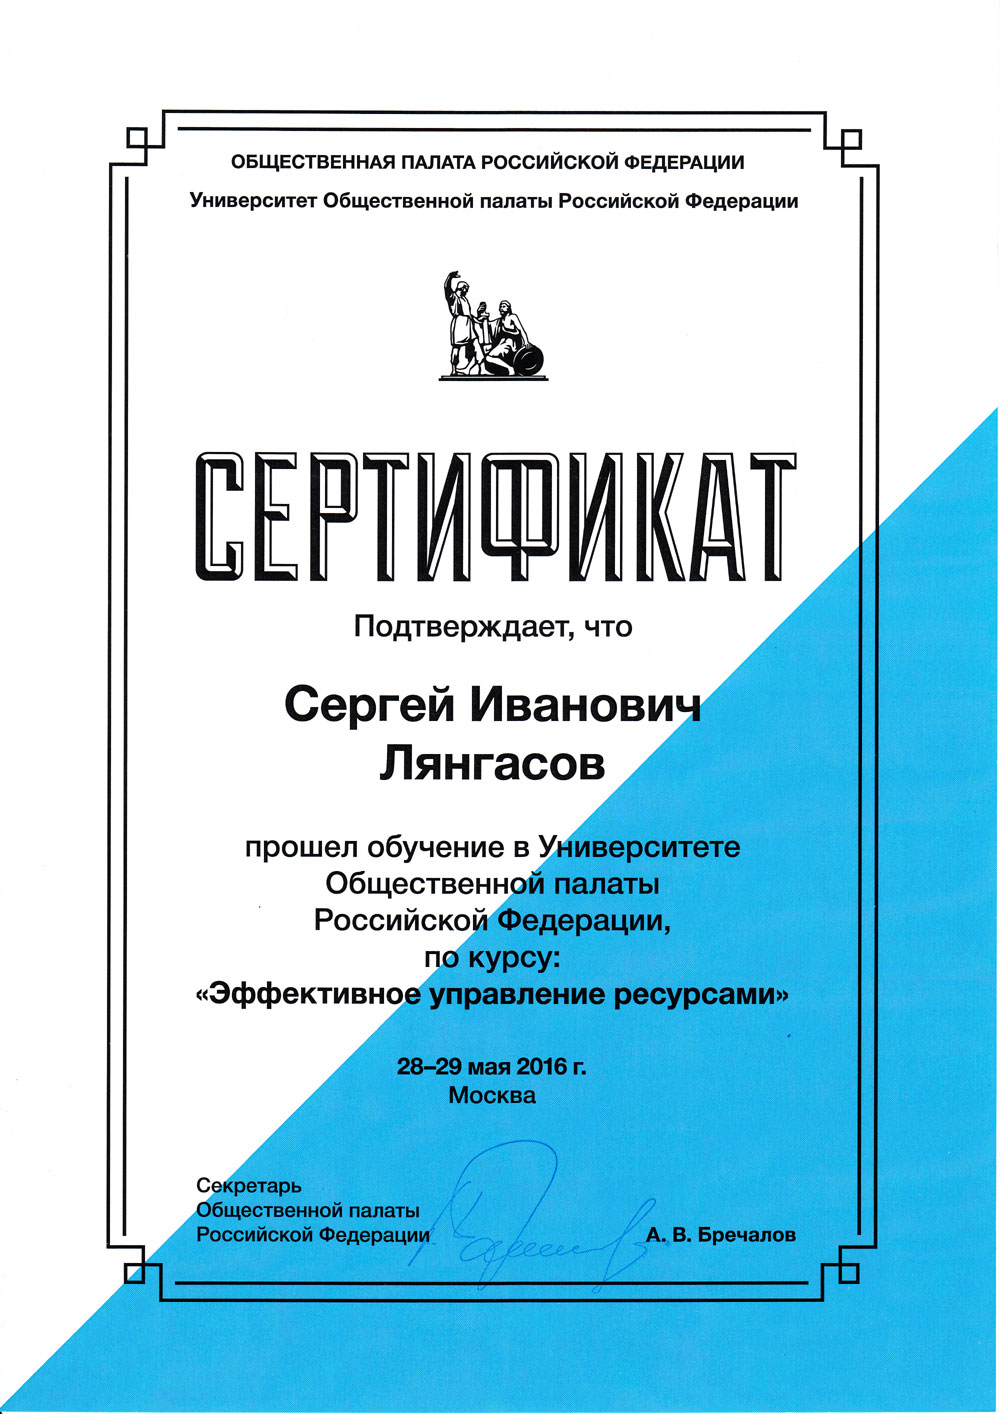 Сертификат СИ общественной палаты 2016